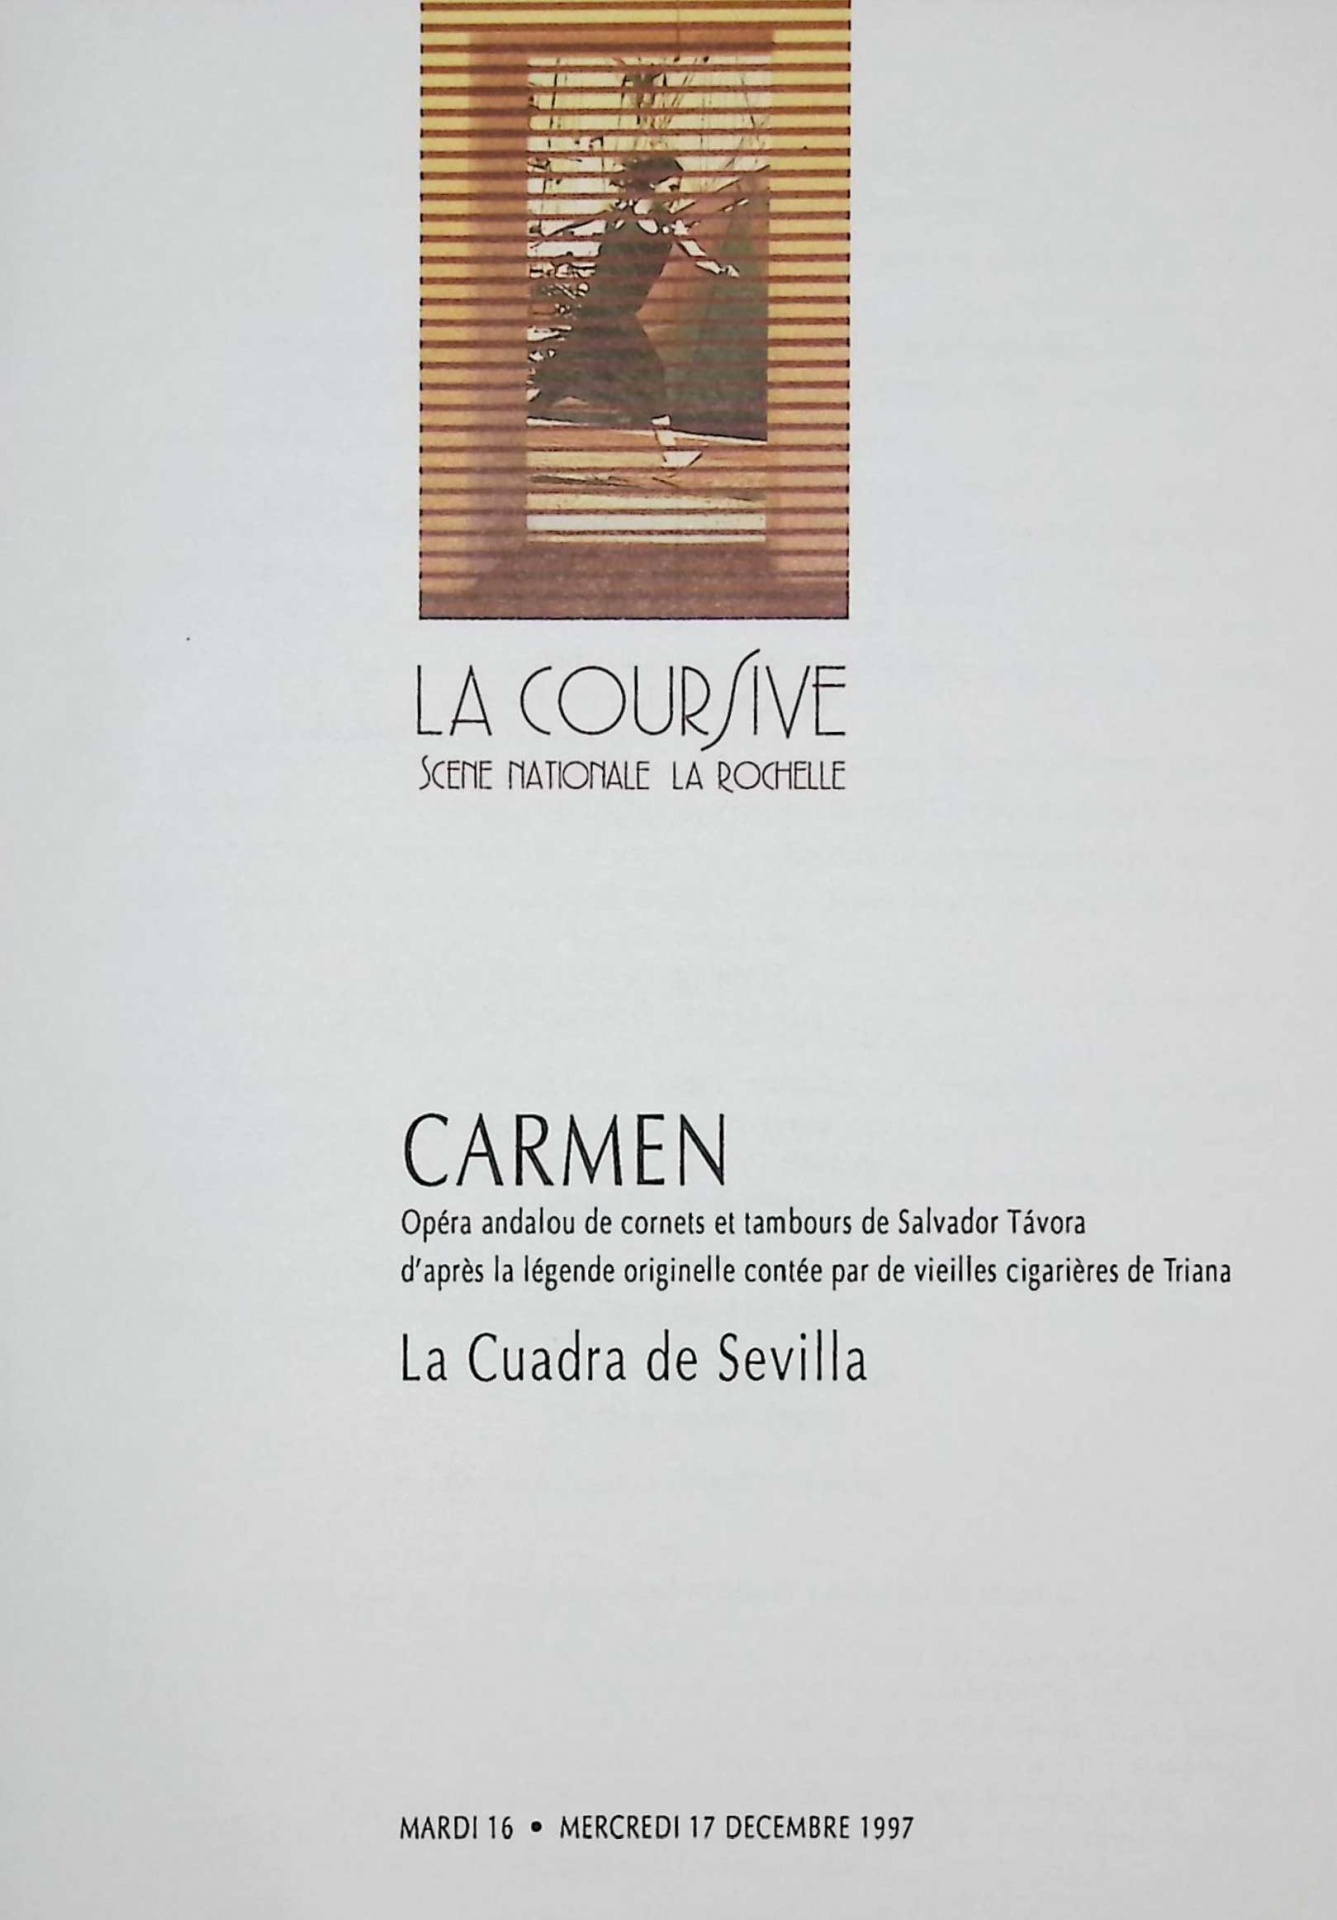 Carmen. Opéra andalou de cornets et tambours de Salvador Távora d´après la légende originelle contée par de vieilles cigarières de Triana. La Cuadra de Sevilla